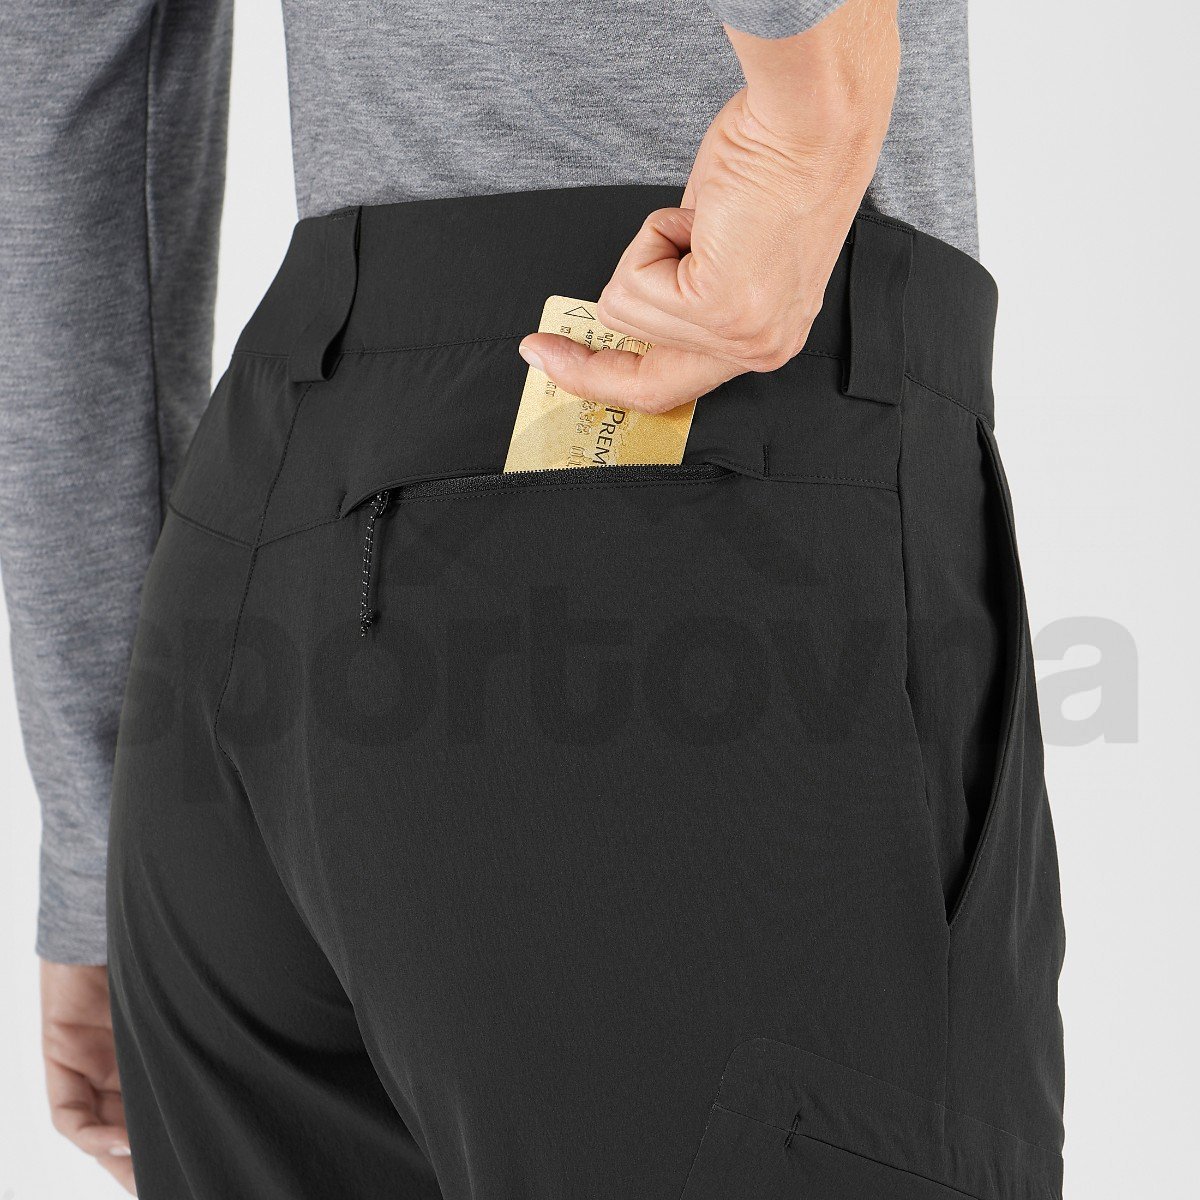 Kalhoty Salomon WAYFARER PANTS W - černá (zkrácená délka)